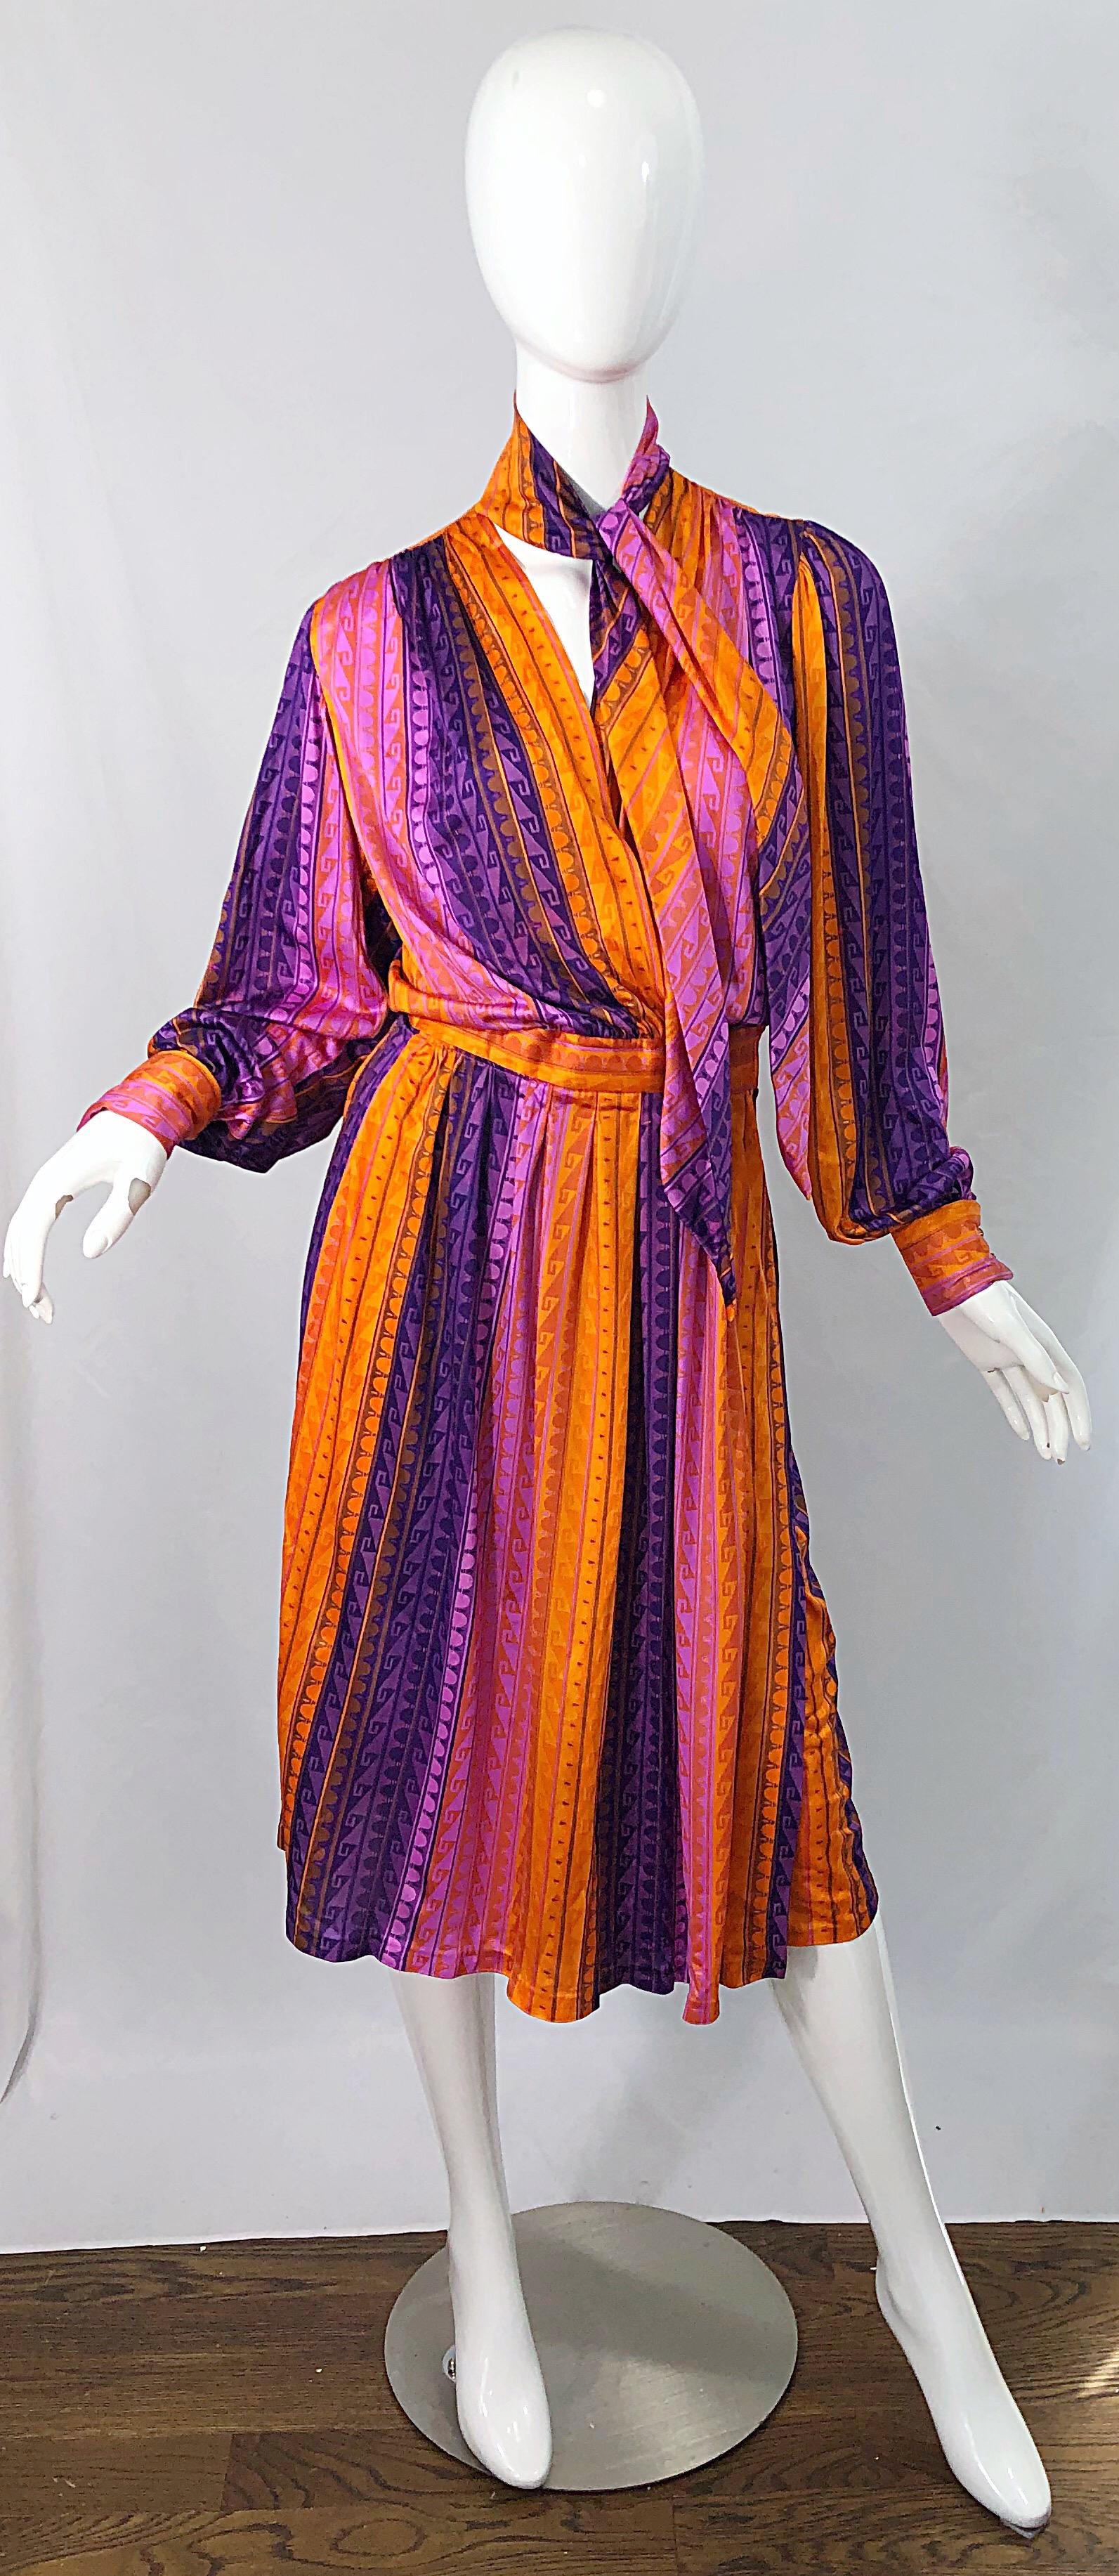 Hübsches 1970er Jahre orange, rosa und lila slinky Jersey Wickelkleid mit angeschlossenem Halstuch ! Mit leuchtenden Farben und einem aztekenähnlichen Druck. Bunte Strassknöpfe an jeder Manschette. Wickeltasche mit verstellbarem Klettverschluss